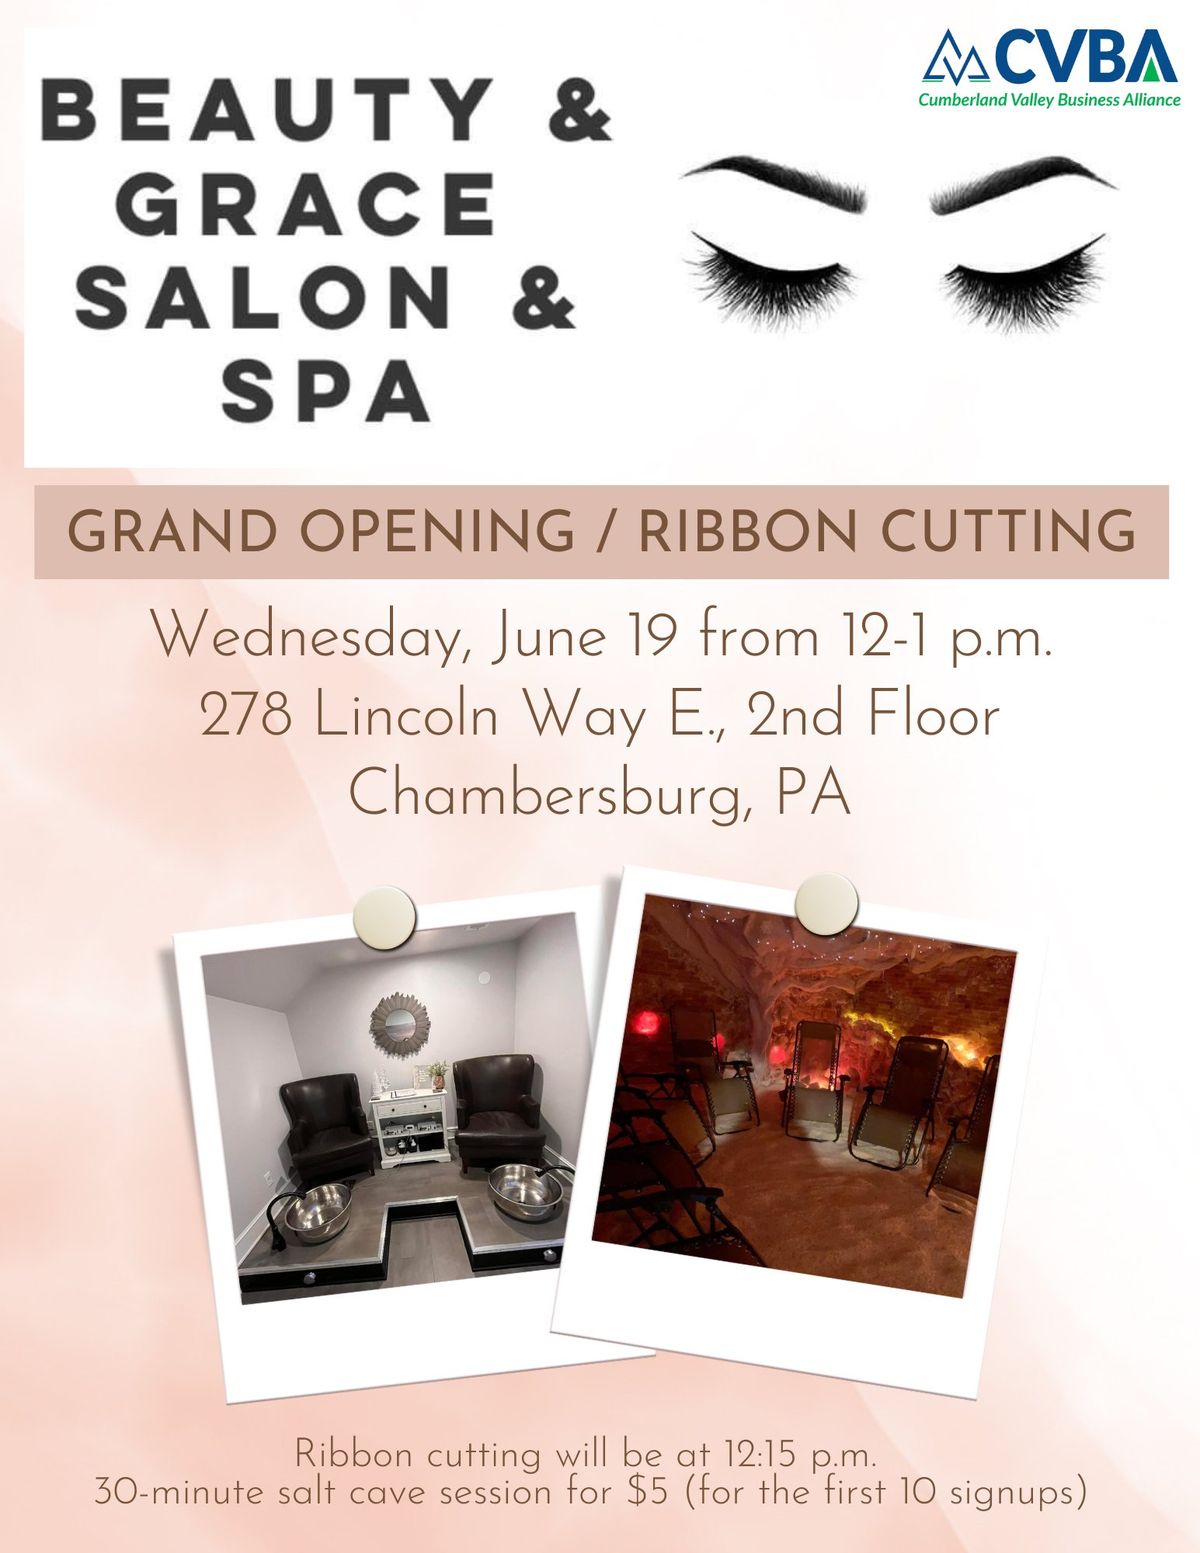 Beauty & Grace Salon & Spa Grand Opening Ribbon Cutting